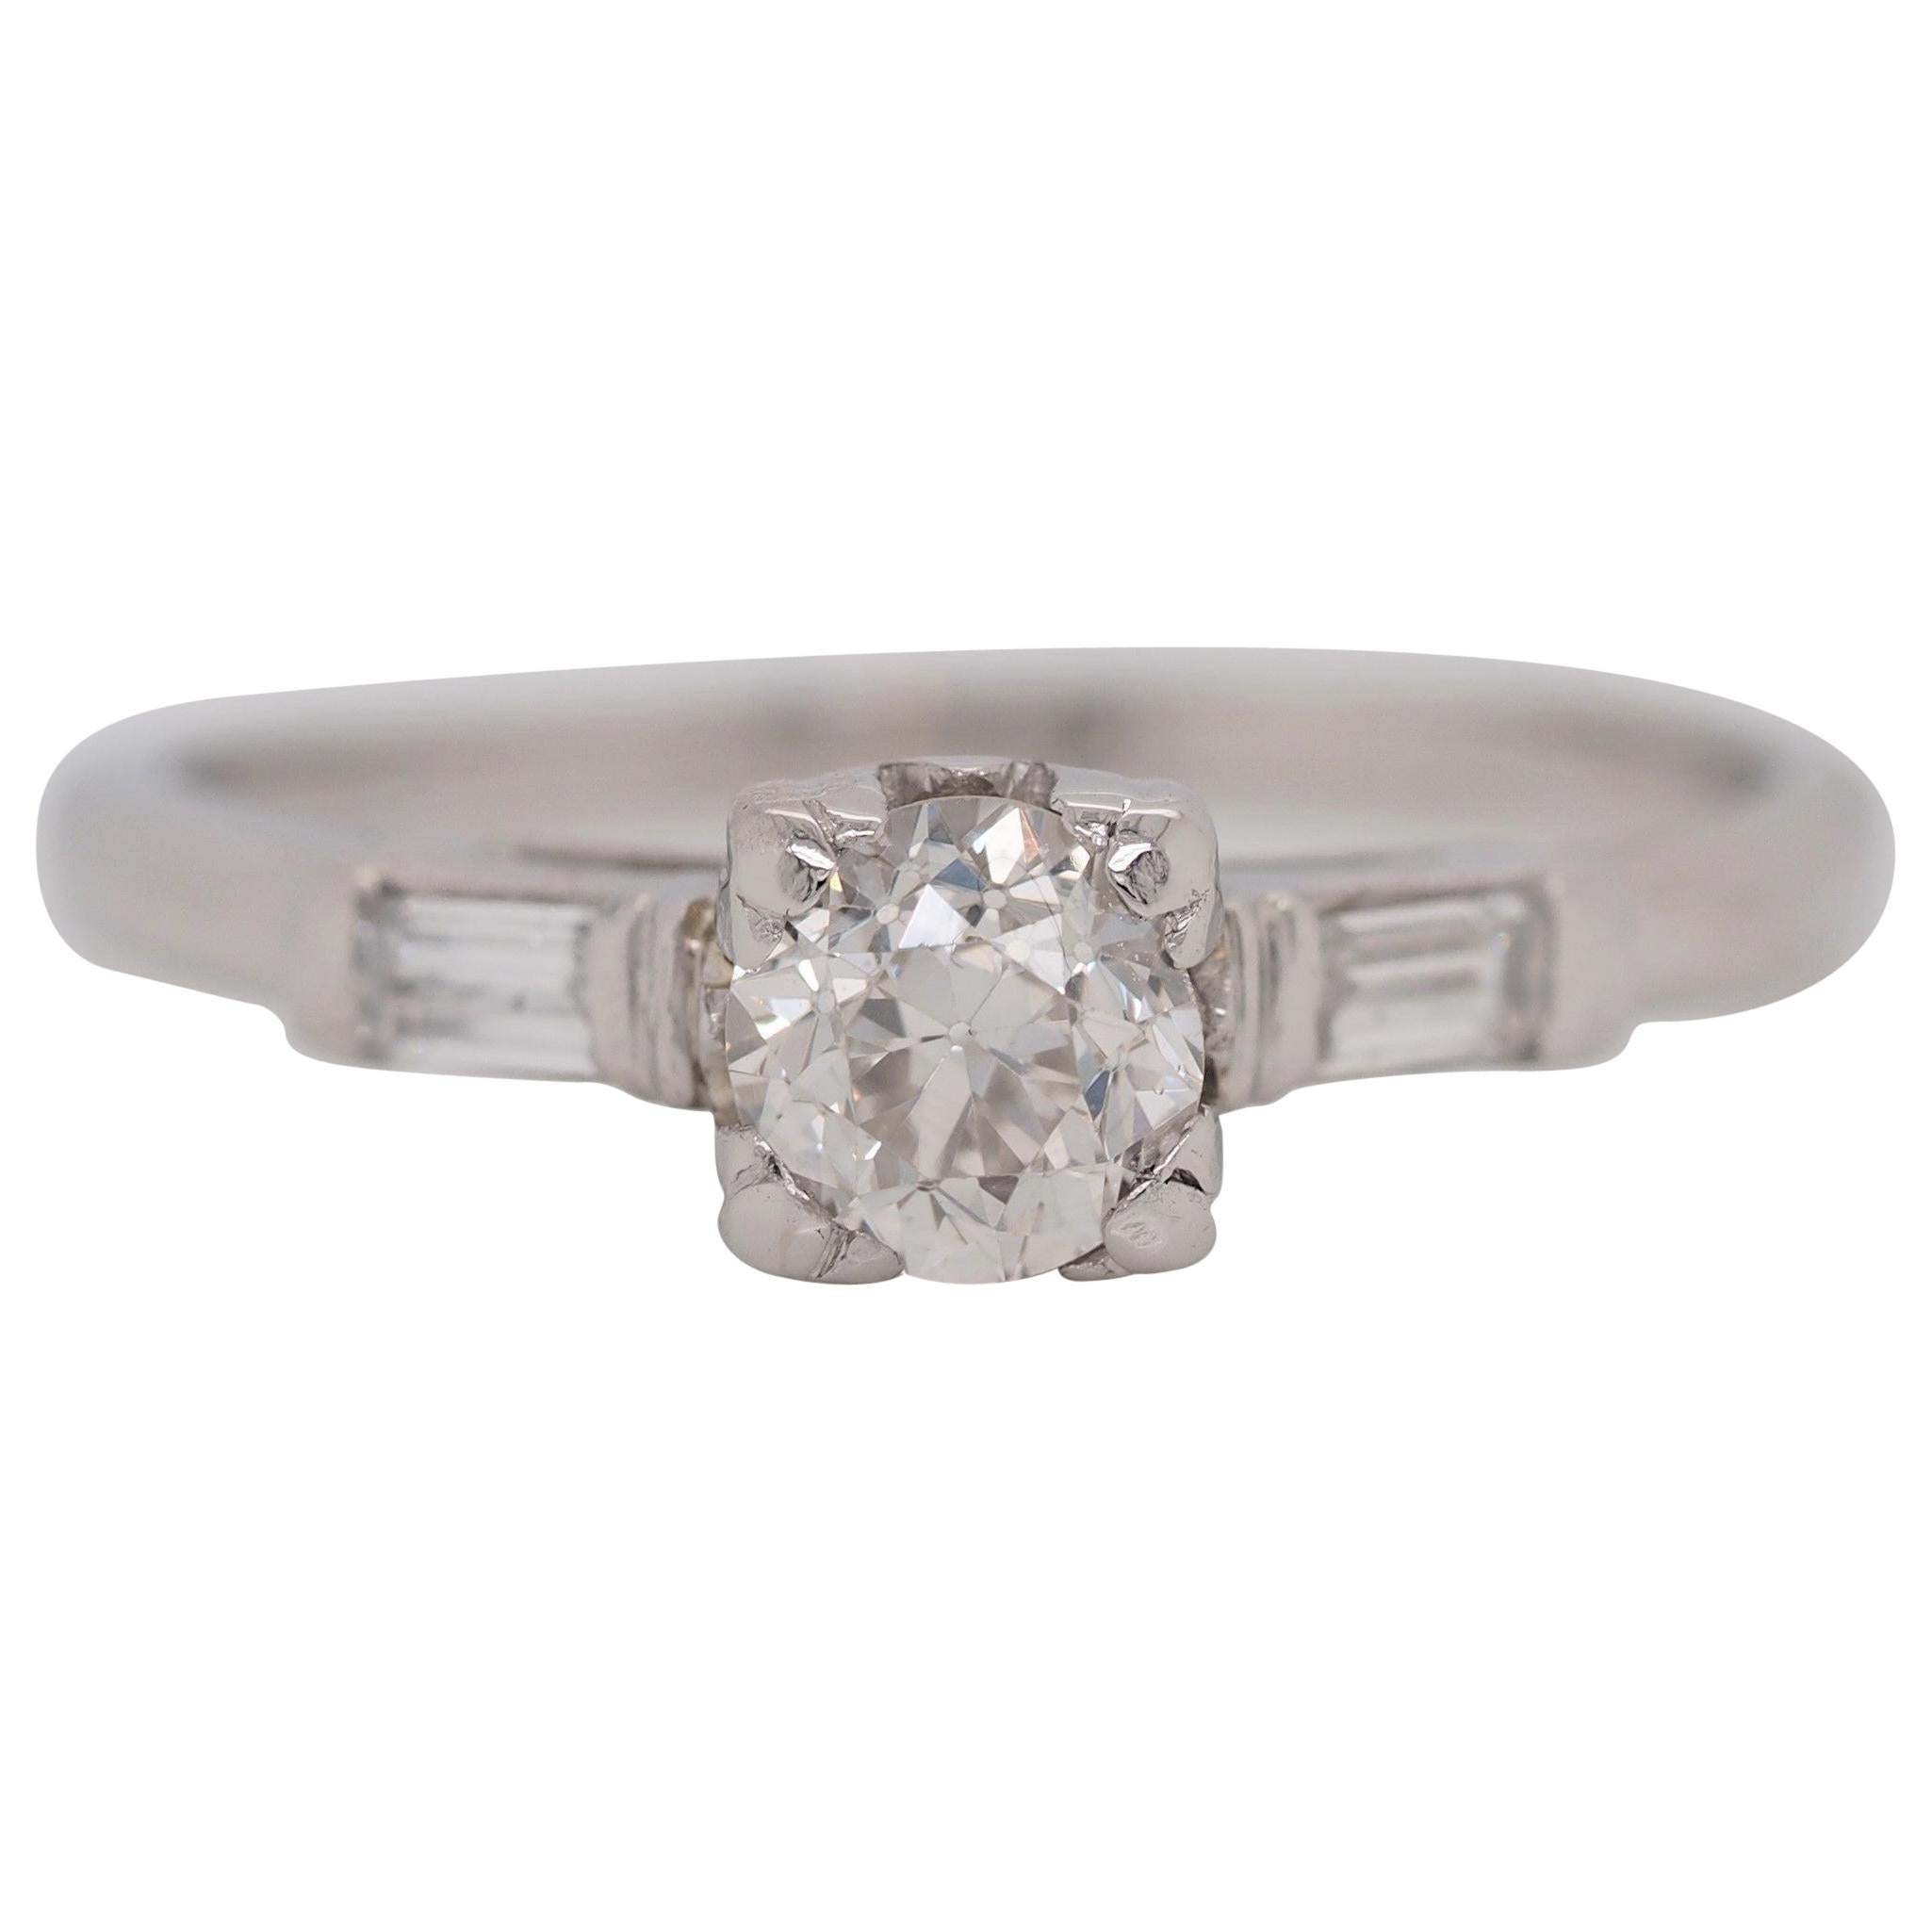 Antique Art Deco Platinum 0.5 Carat Old European Cut Diamond Engagement Ring